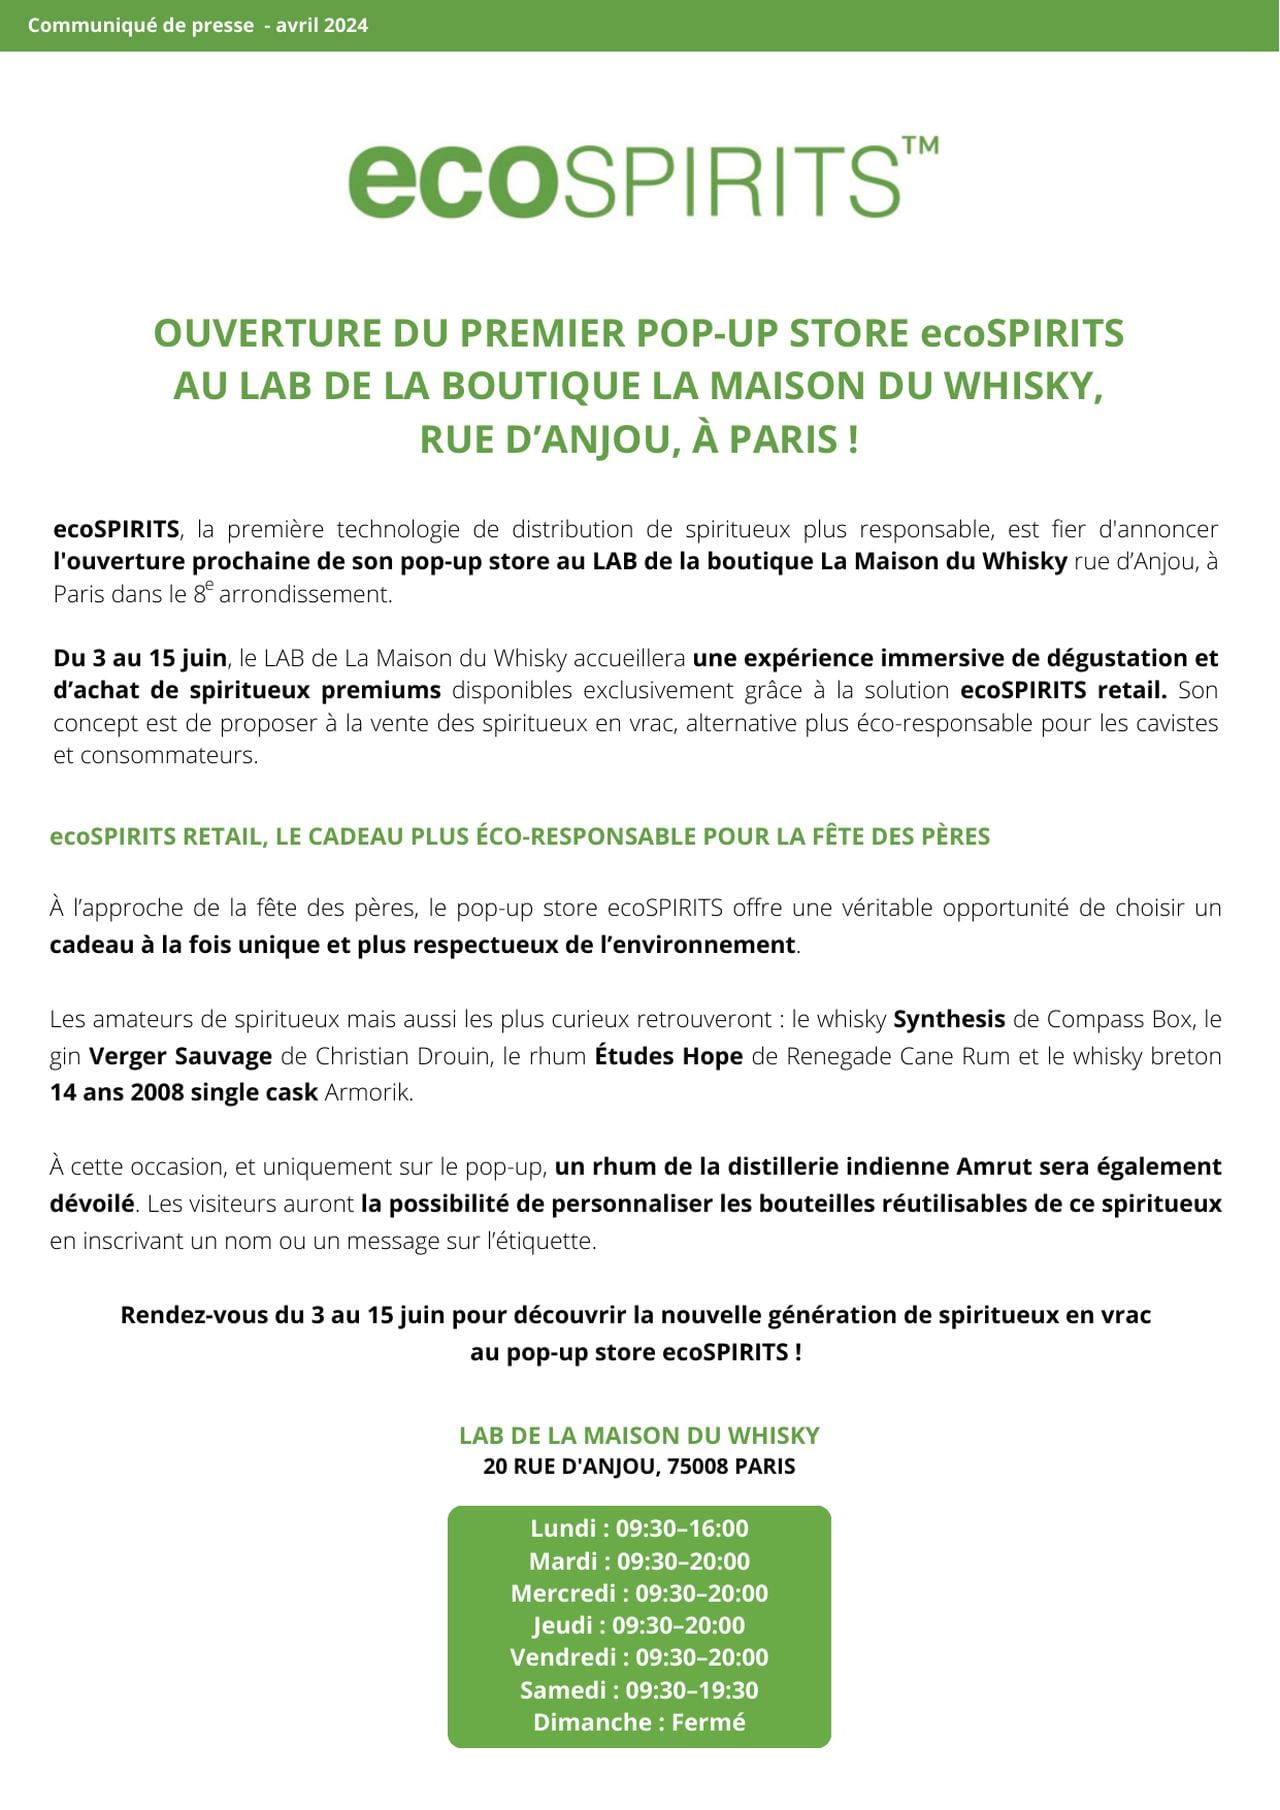 Ouverture du premier pop-up store ecoSPIRITS au LAB de la boutique La Maison du Whisky à Paris